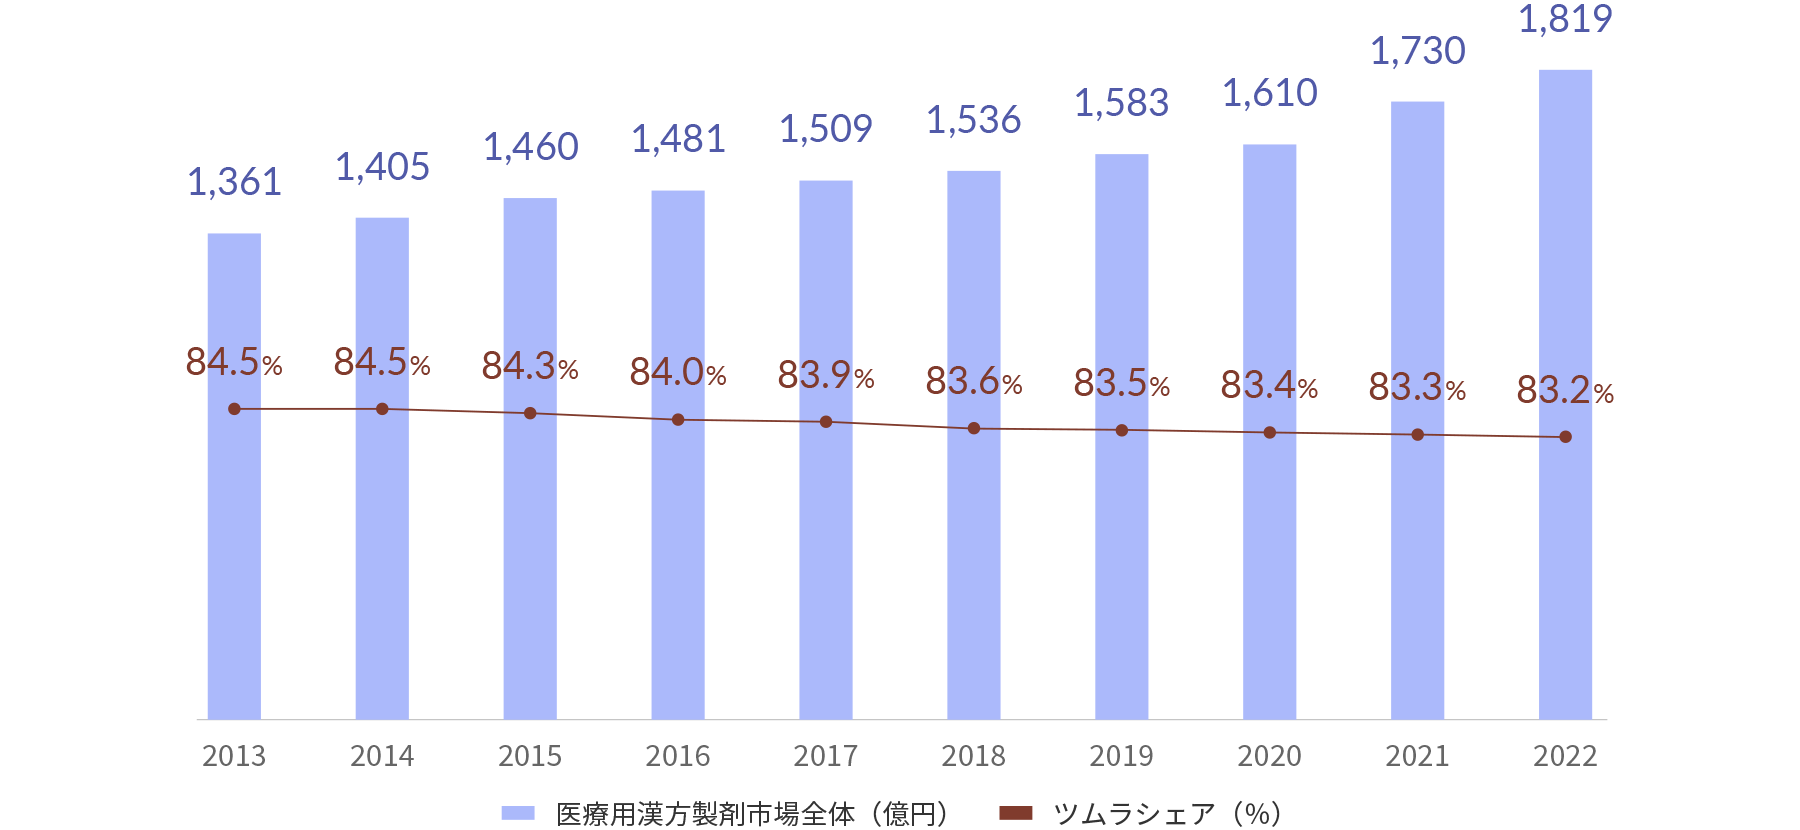 2013年から2022年までの医療用漢方製剤の市場動向と当社シェアの推移